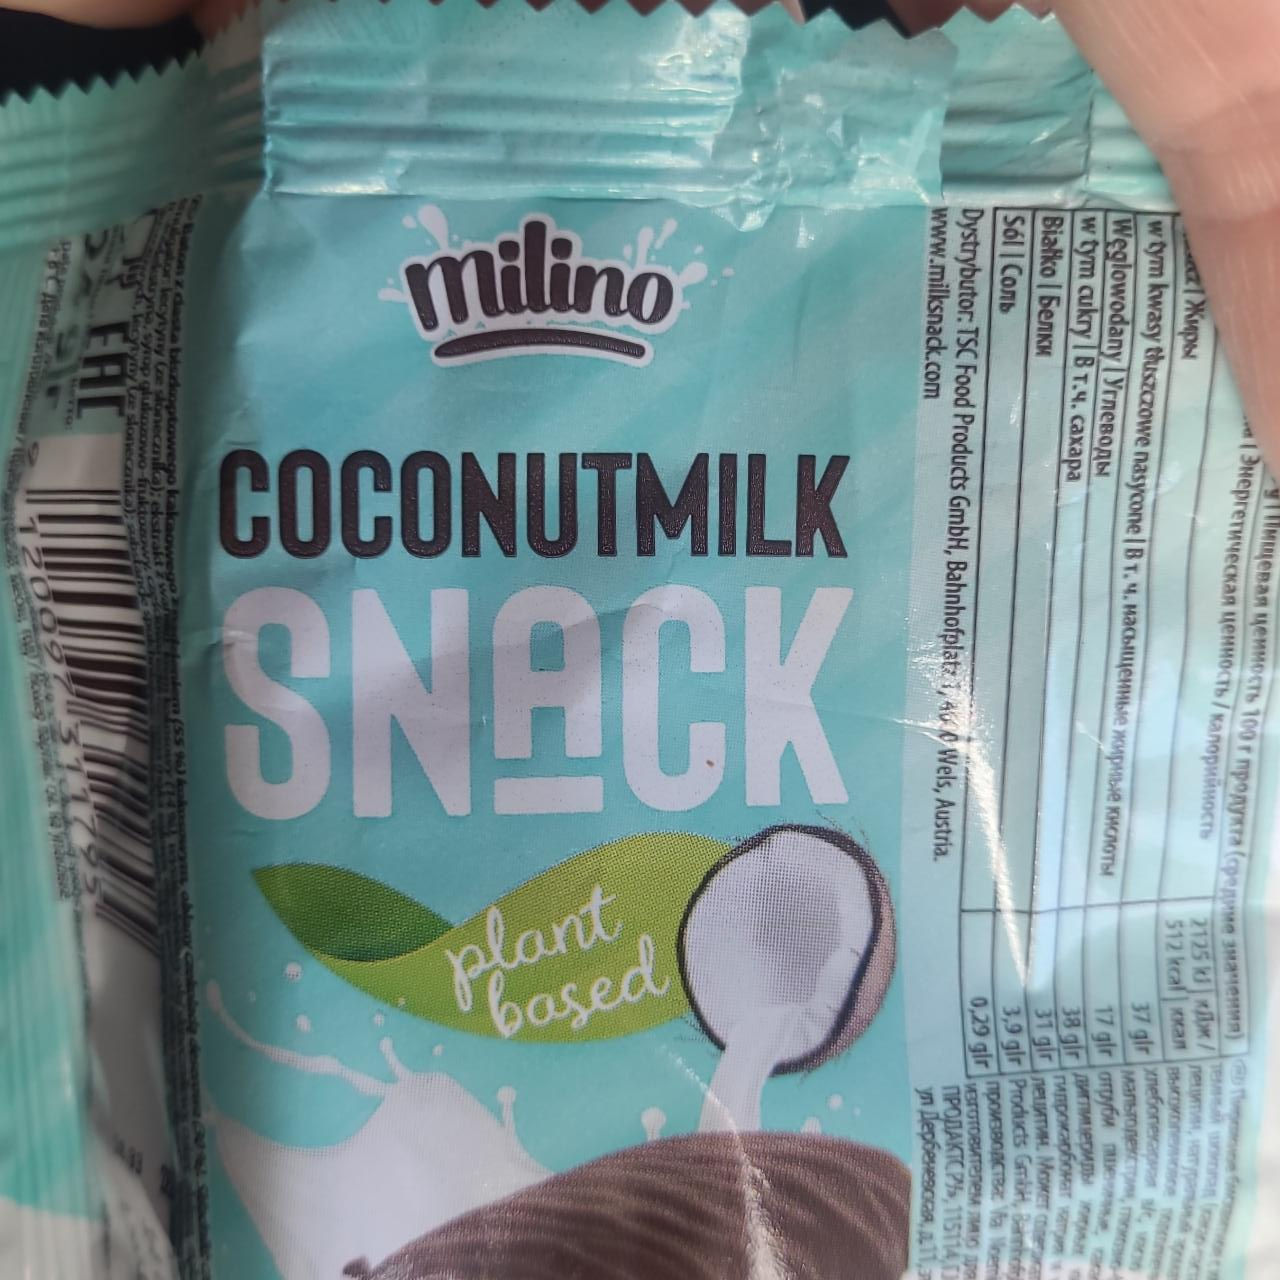 Képek - Coconutmilk snack Milino